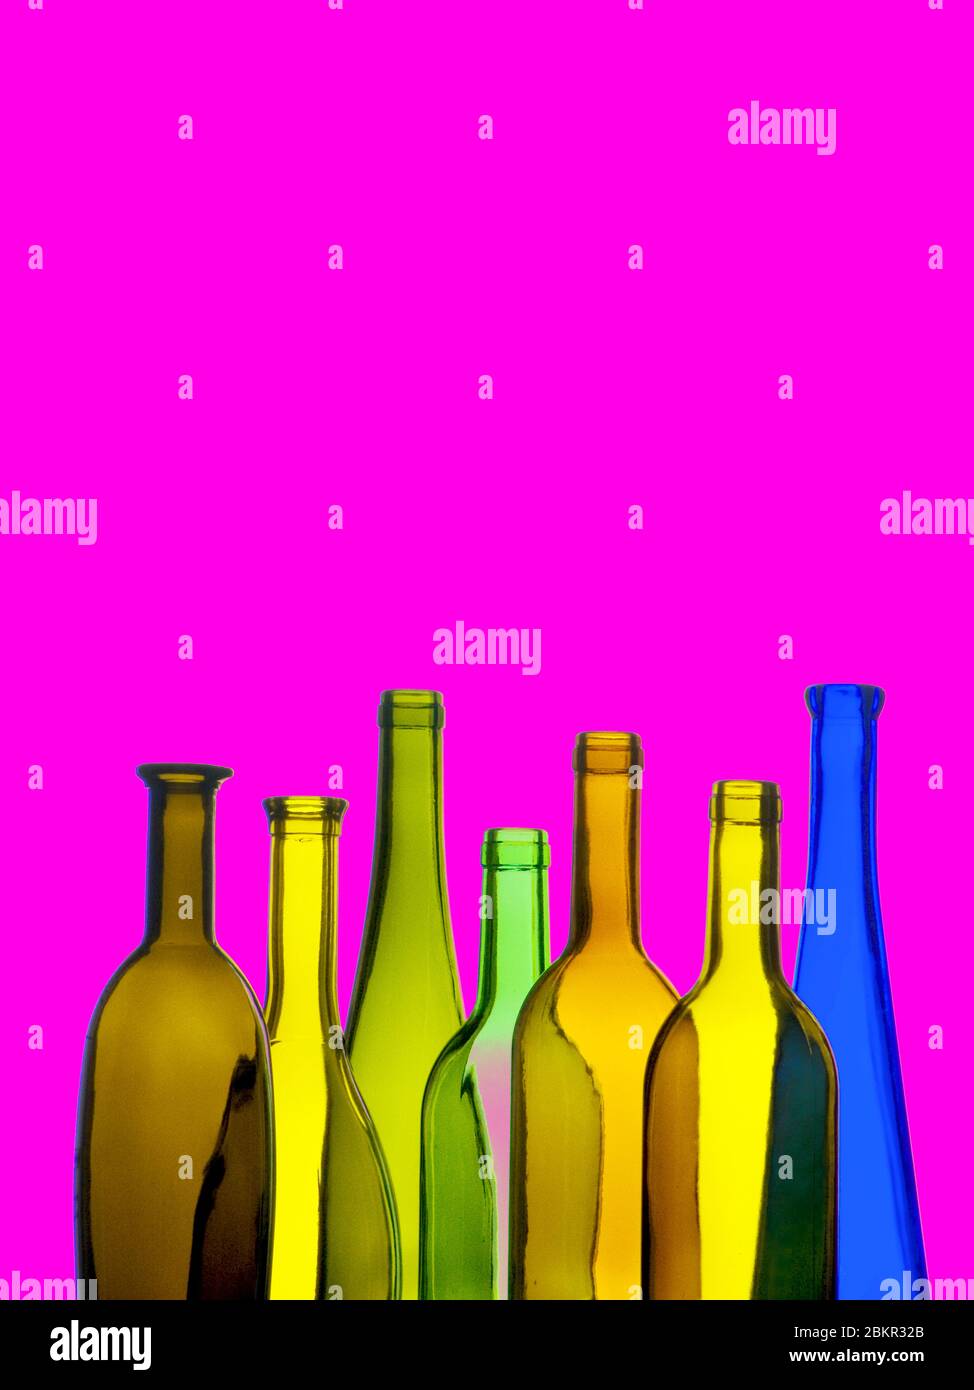 BOTTIGLIE DI VINO COLORATE E MODERNE bottiglie di vino in vetro in formato verticale, sfondo di colore magenta brillante, originali e originali, stile poster nuovo mondo, vini da bere freschi Foto Stock